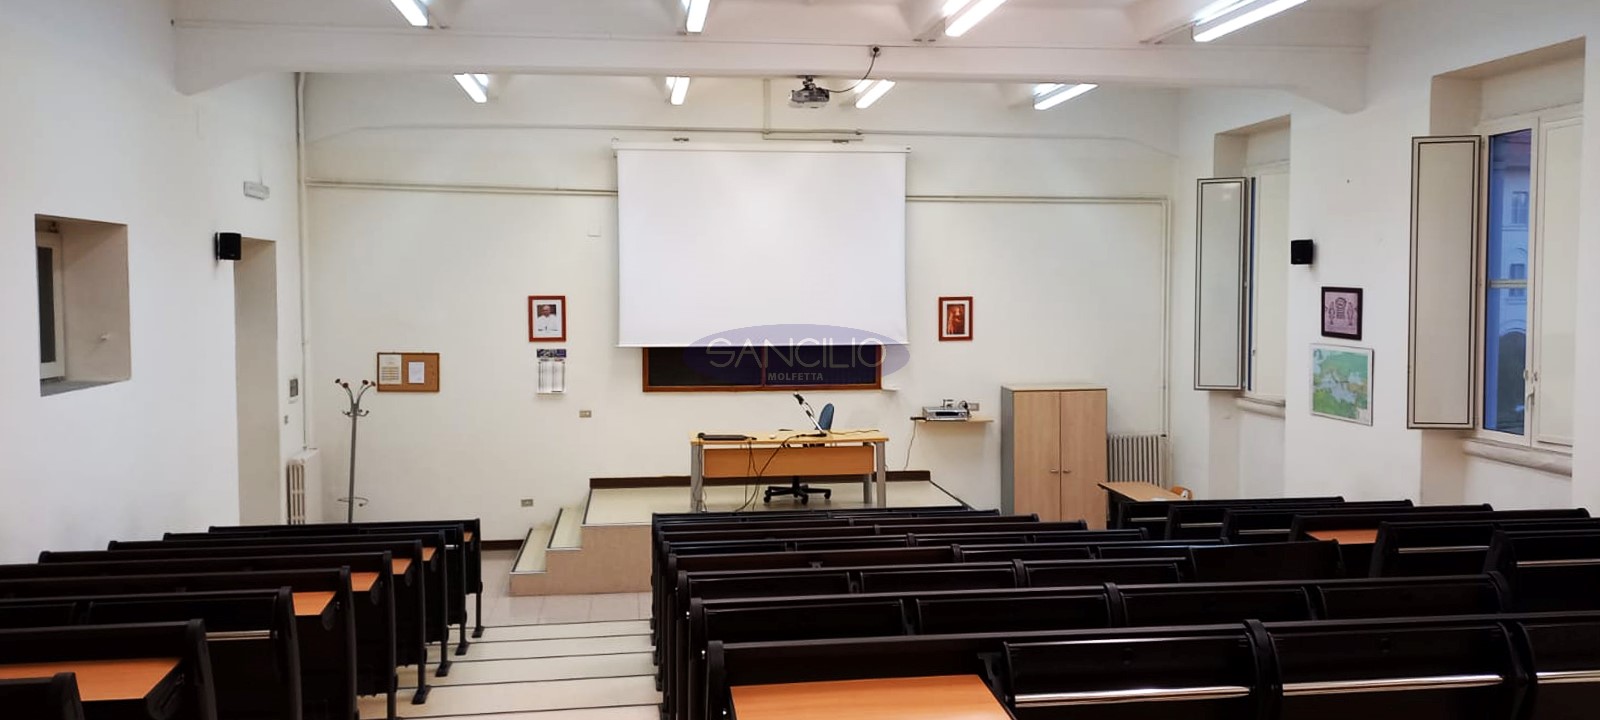 sancilio evotech molfetta - aula università istituto teologico pugliese banchi dispositivi digitali multimediali scrivania sedia cattedra